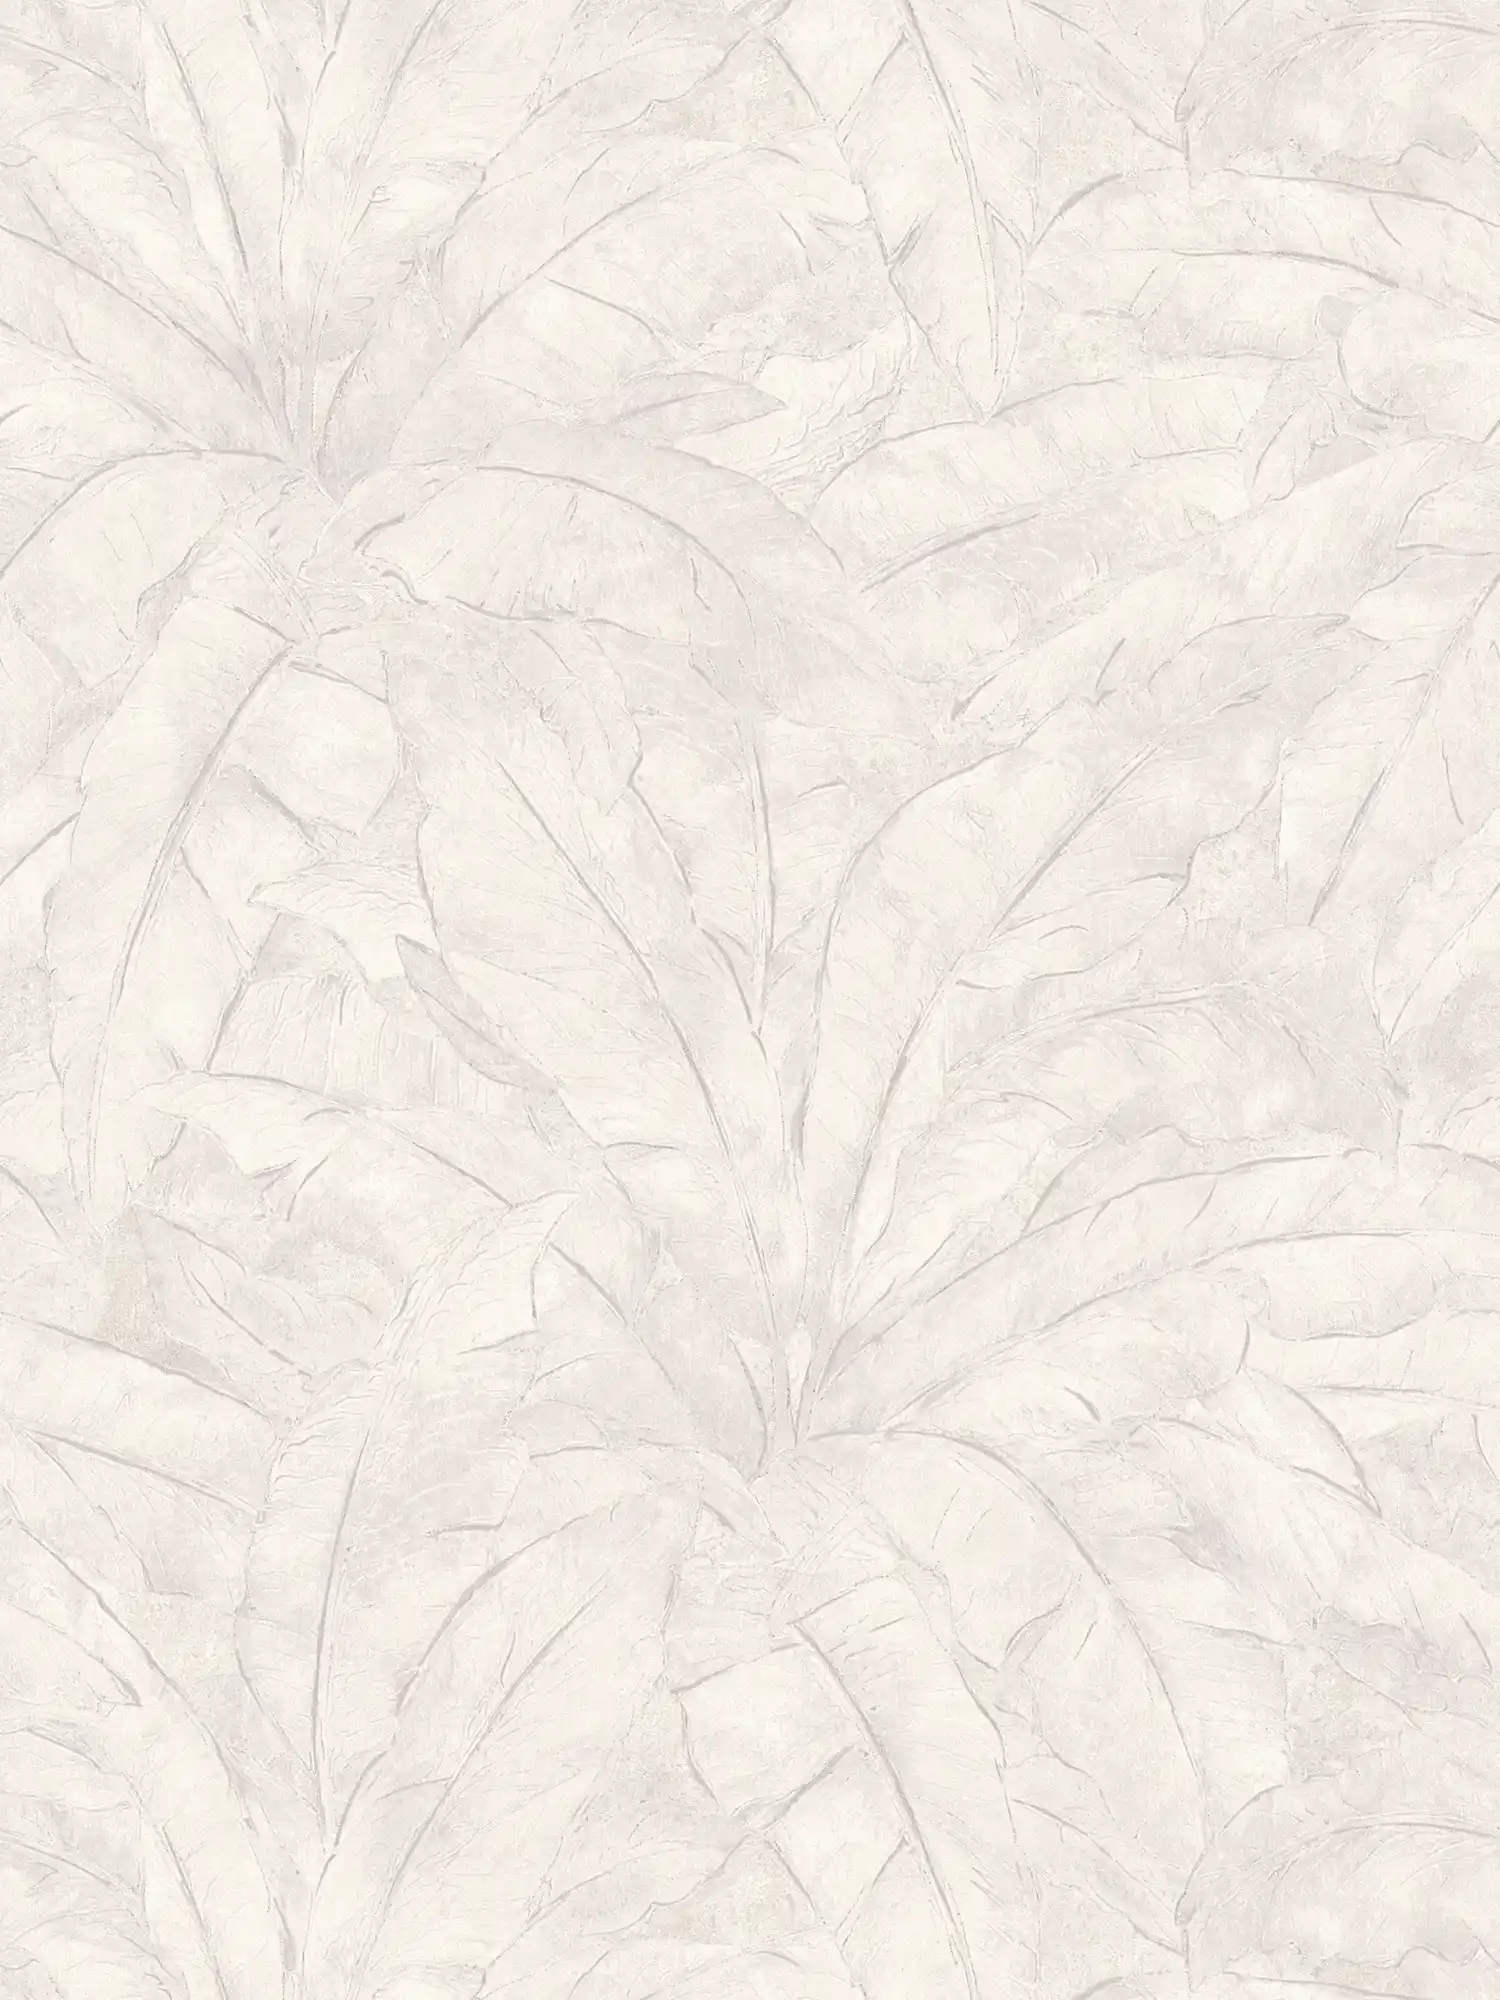 Papel pintado selva con acento plateado - gris, plata, blanco
